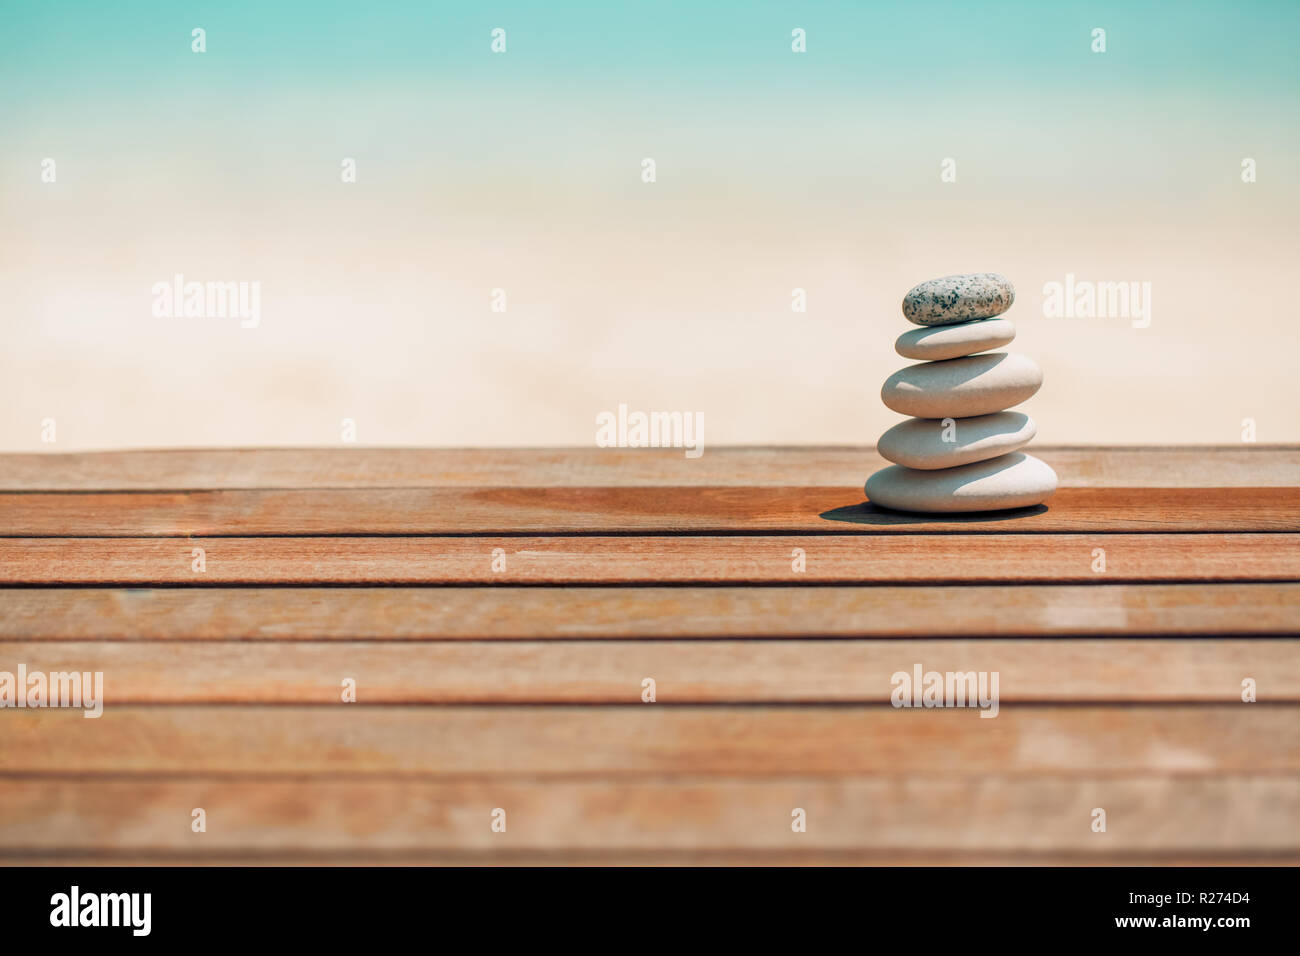 Zen Steine am tropischen Strand für perfekte Meditation. Steine auf weichen Sandstrand symbolisiert Stabilität, Zen, Entspannung, Harmonie, Balance, inspiration Stockfoto